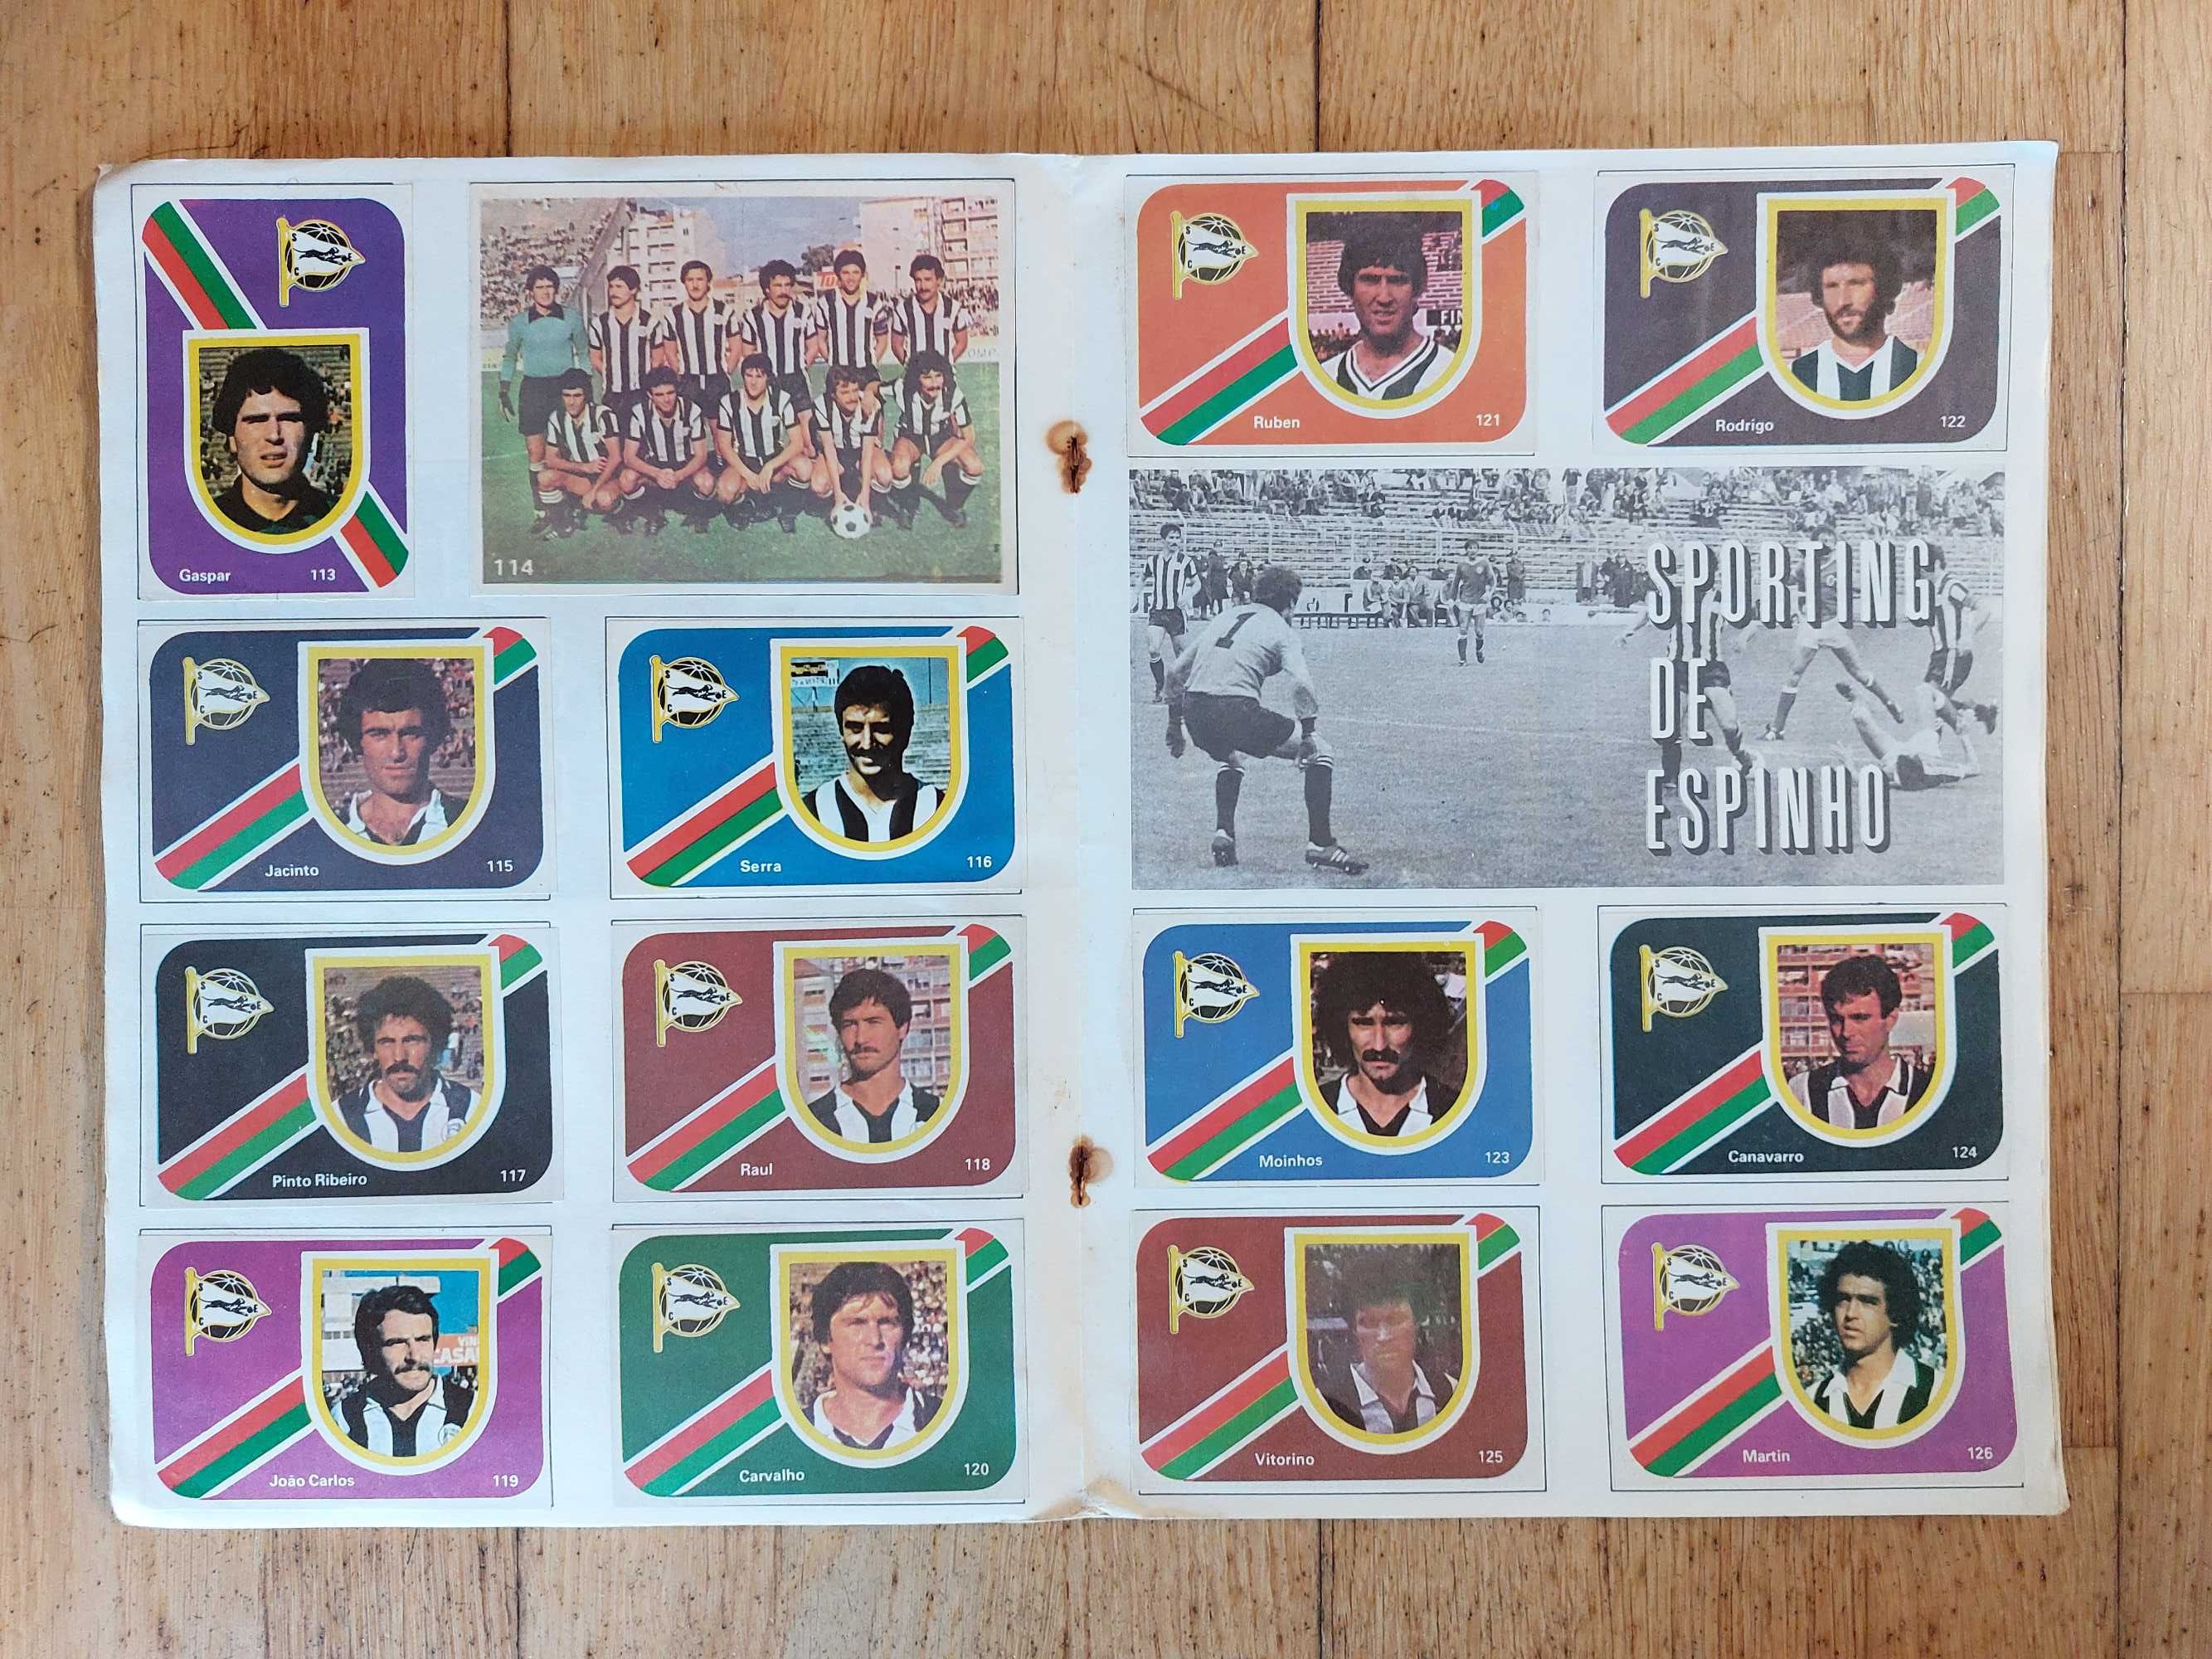 Caderneta de cromos "Festa do Futebol 81-82"  - Completa